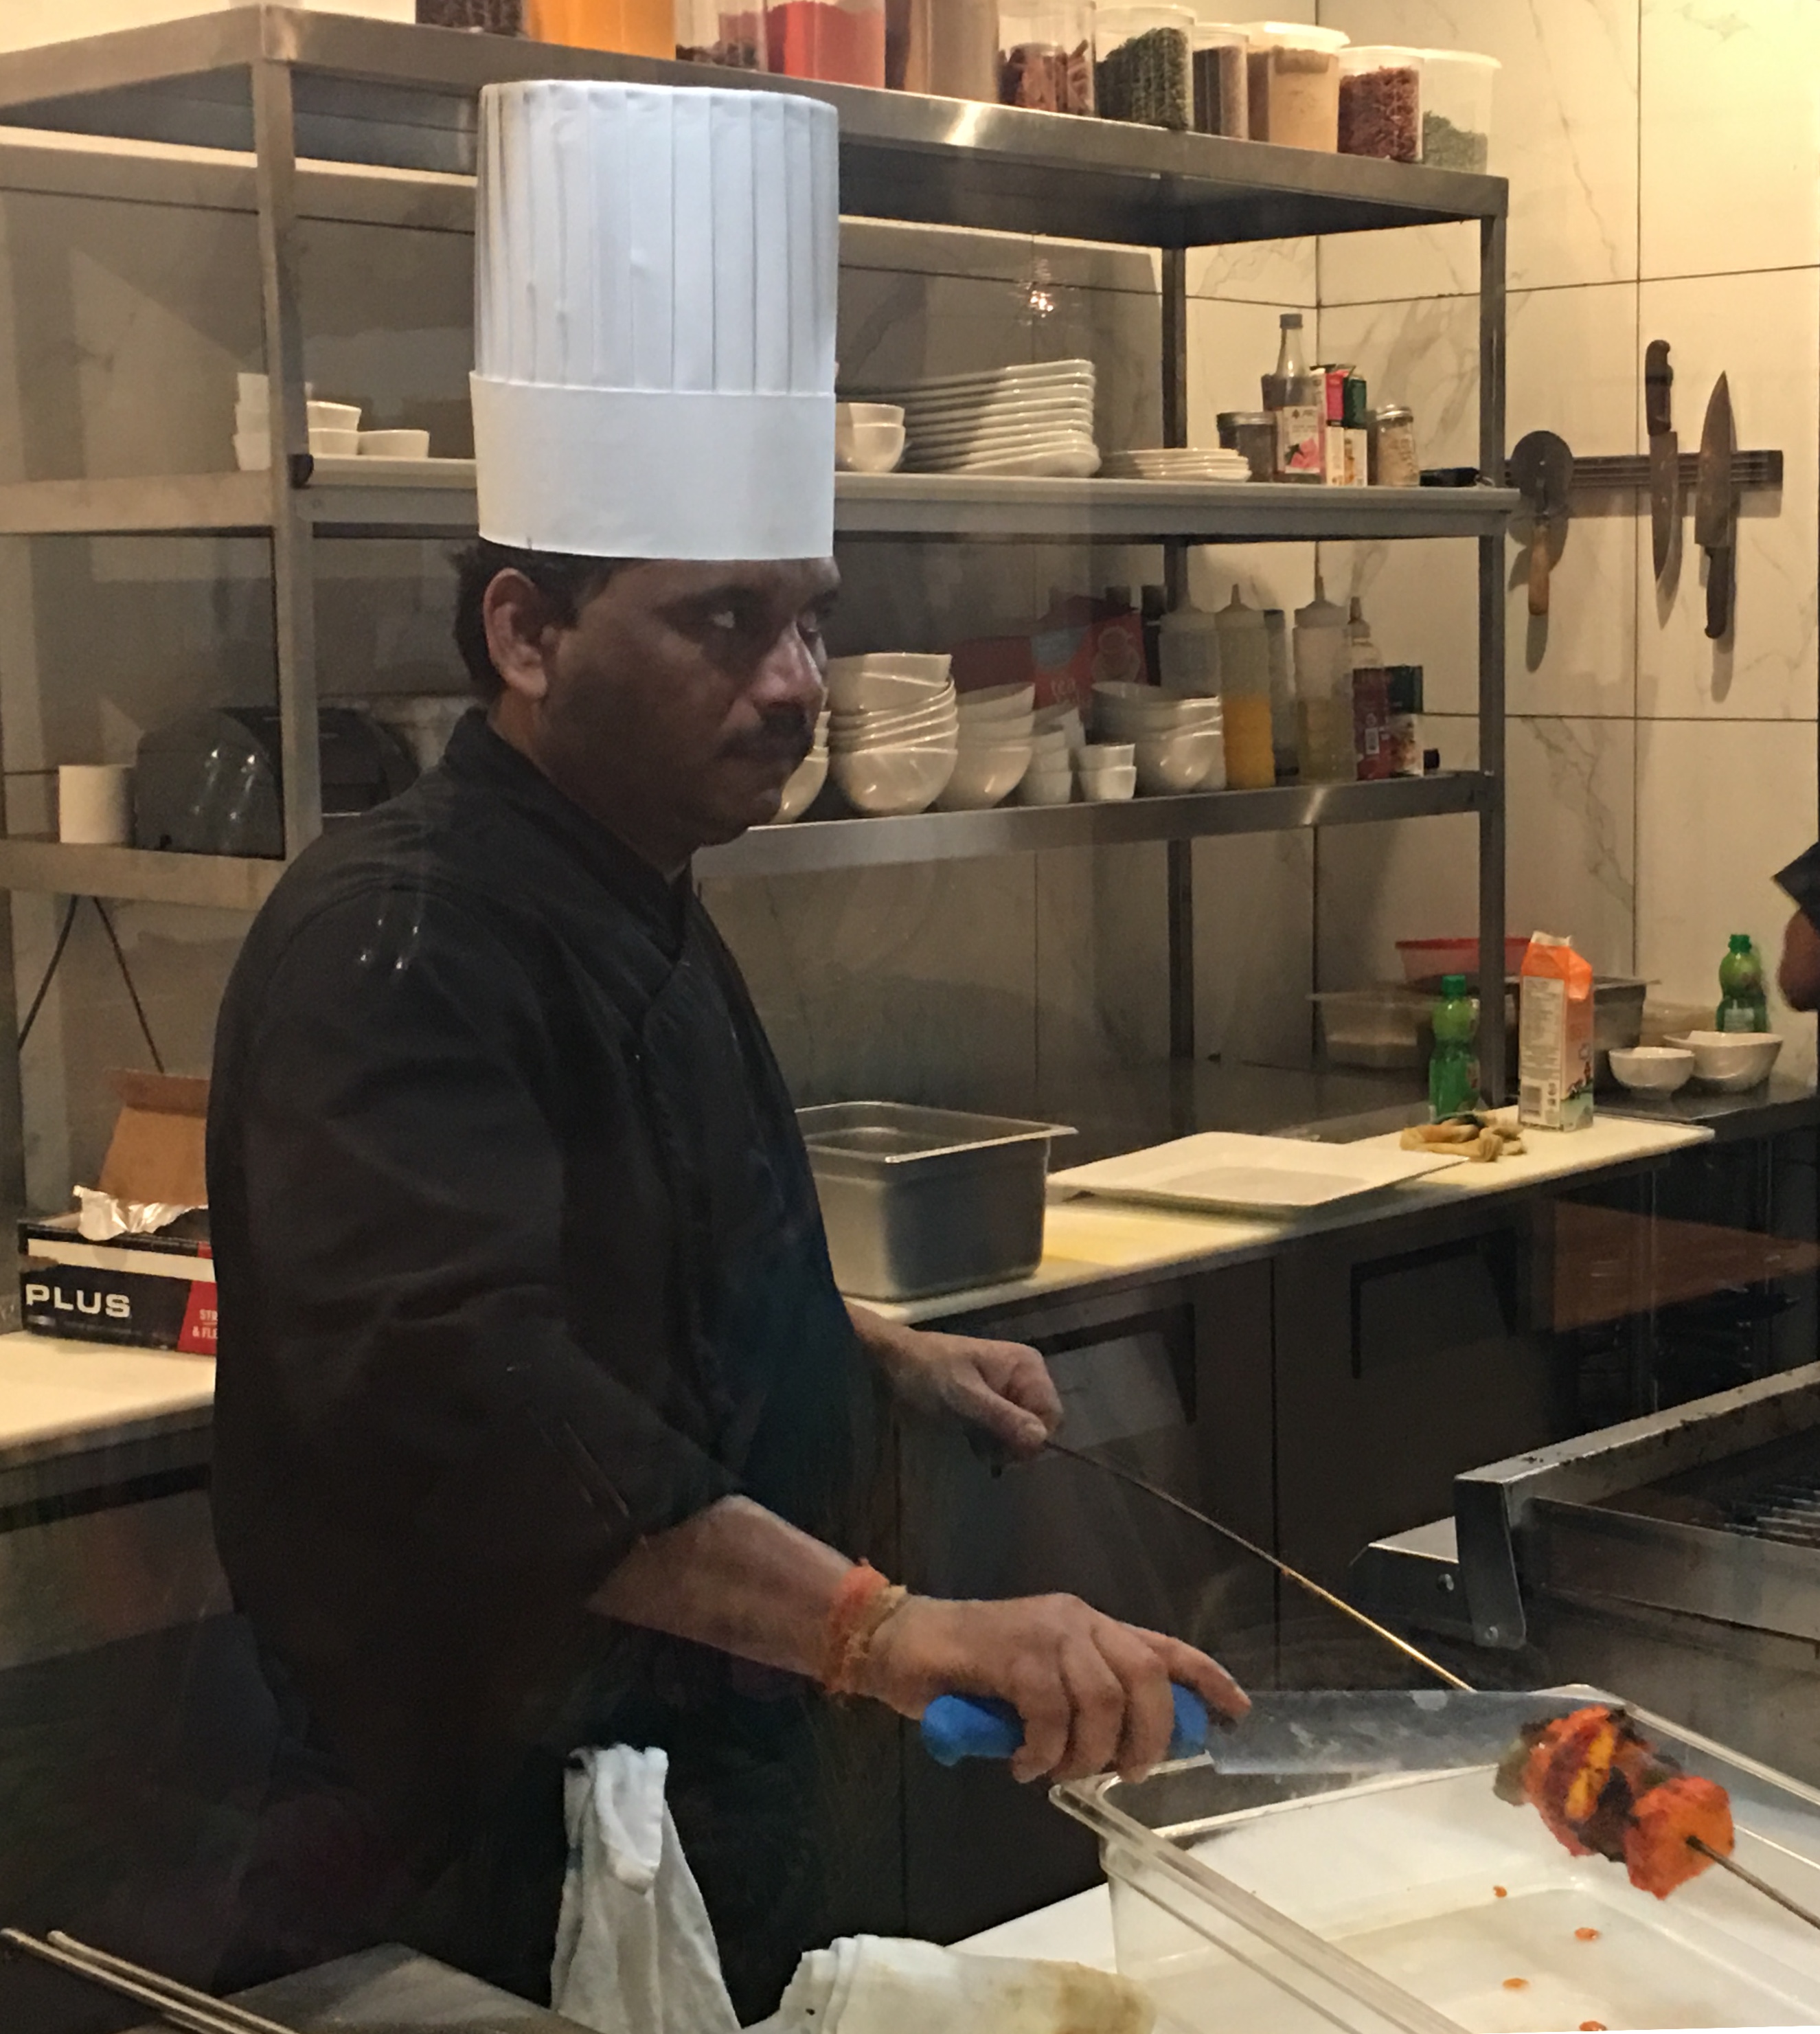 Un homme en toque prépare une cuisine raffinée dans une cuisine.